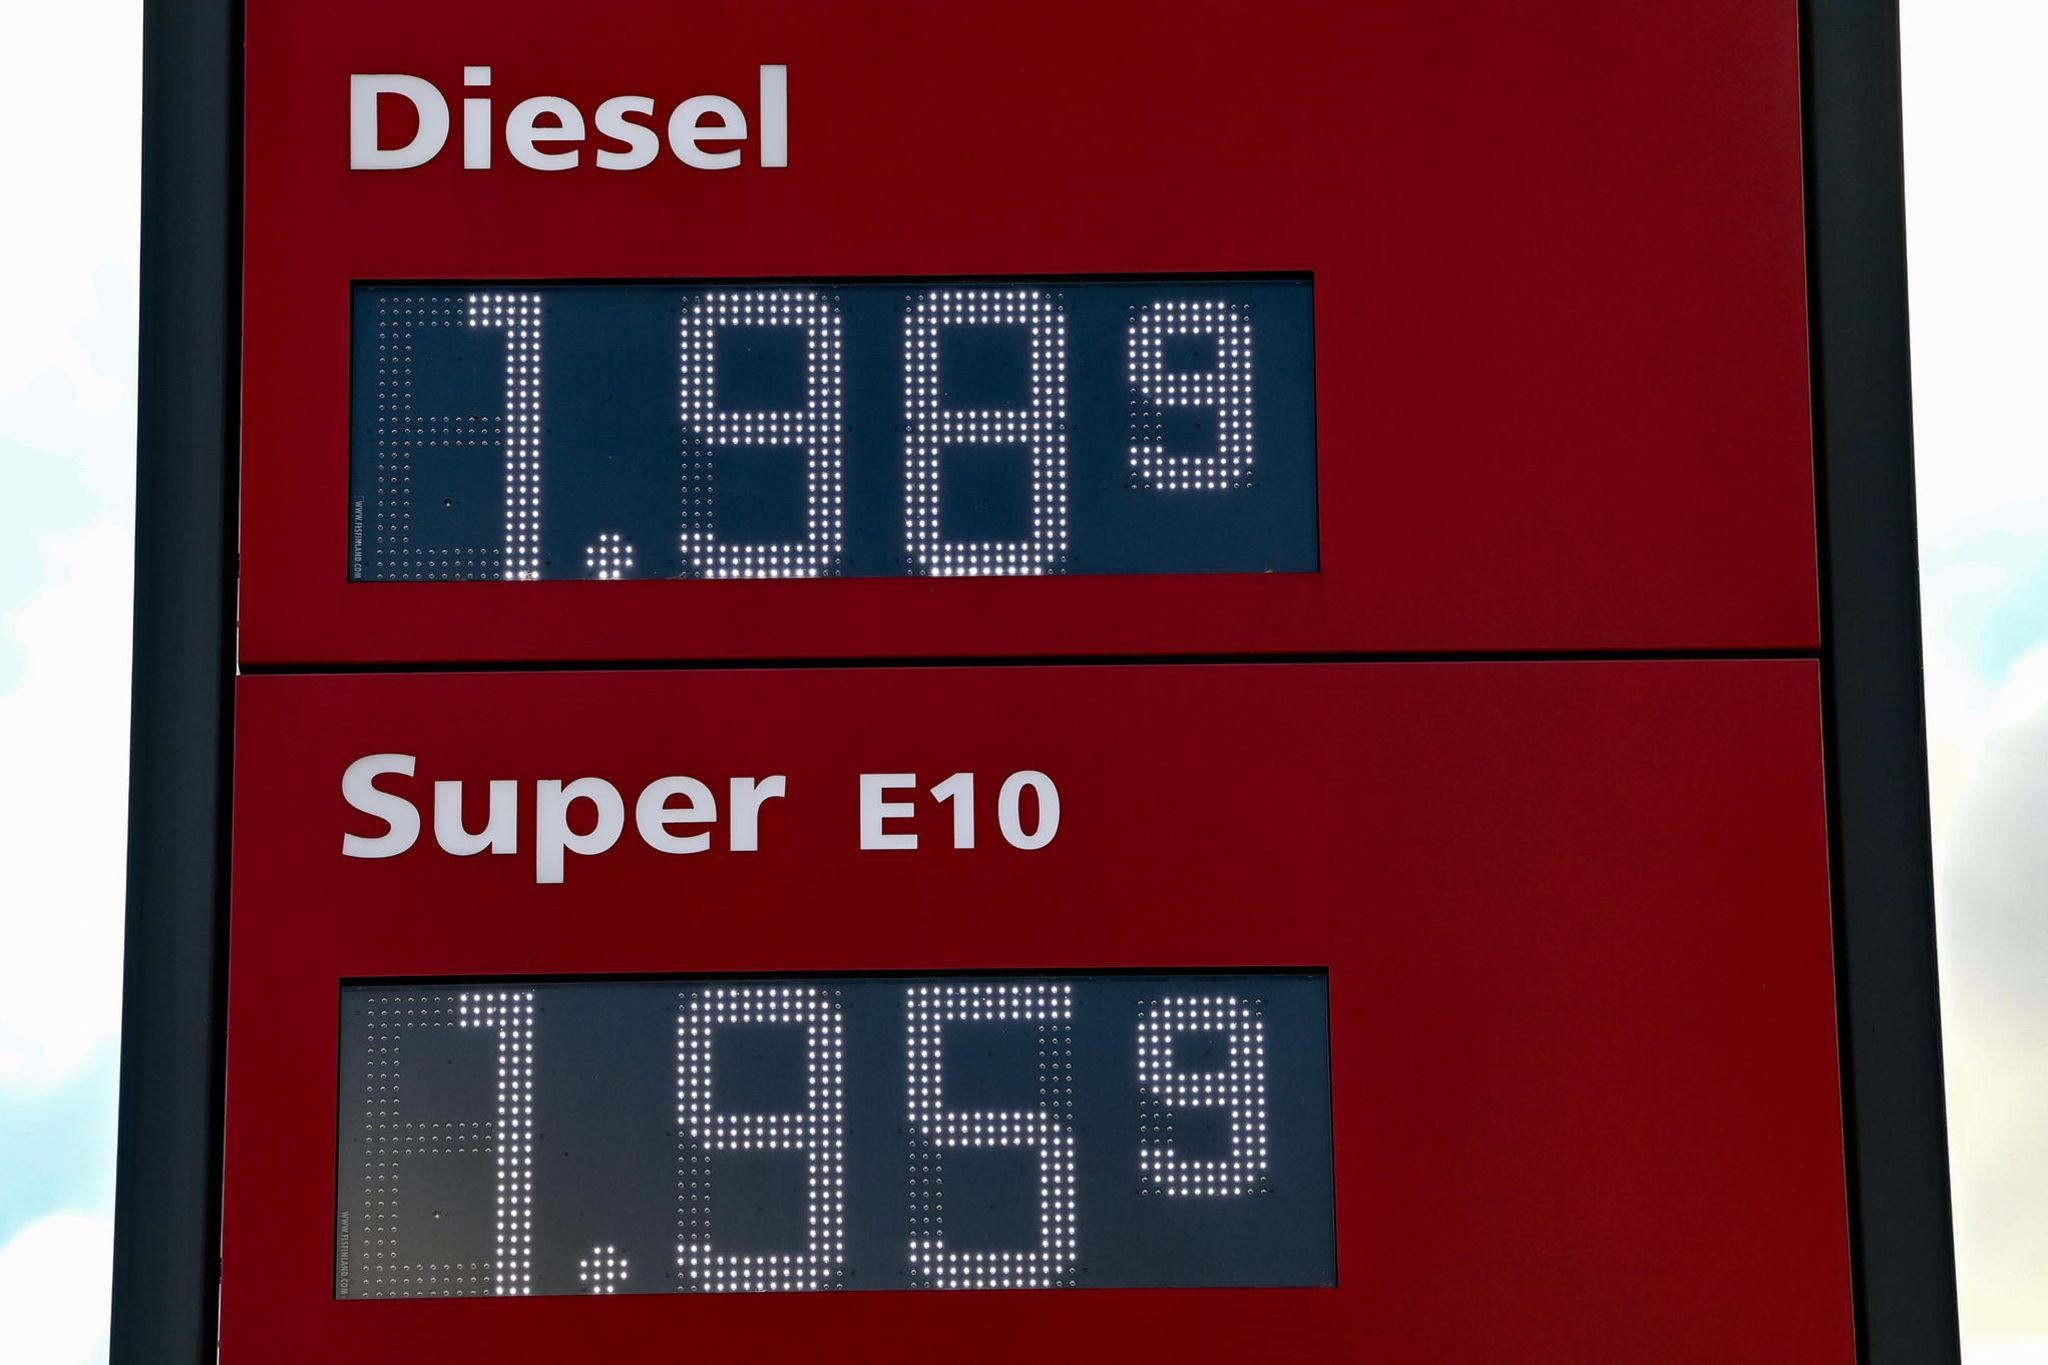 Preise für Benzin und Diesel – ADAC klagt: Verbraucher „zahlen